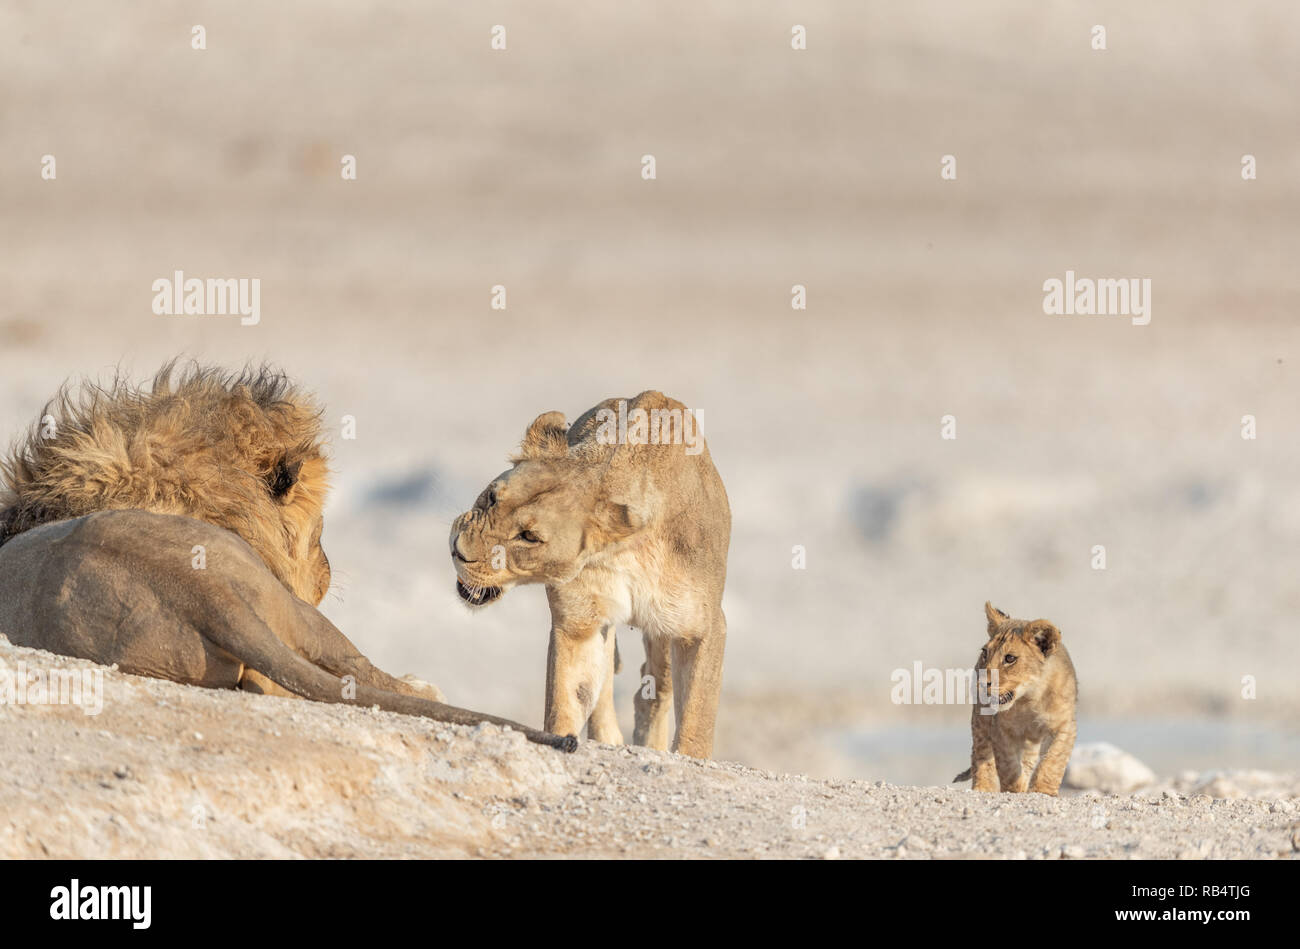 Das Wasserloch in der Nähe bietet Mahlzeiten für den Stolz des Löwen. NAMIBIA, Afrika: Diese MISCHIVIOUS lion Cub kann nicht warten, König zu werden, wie er ringt mit seinem t Stockfoto